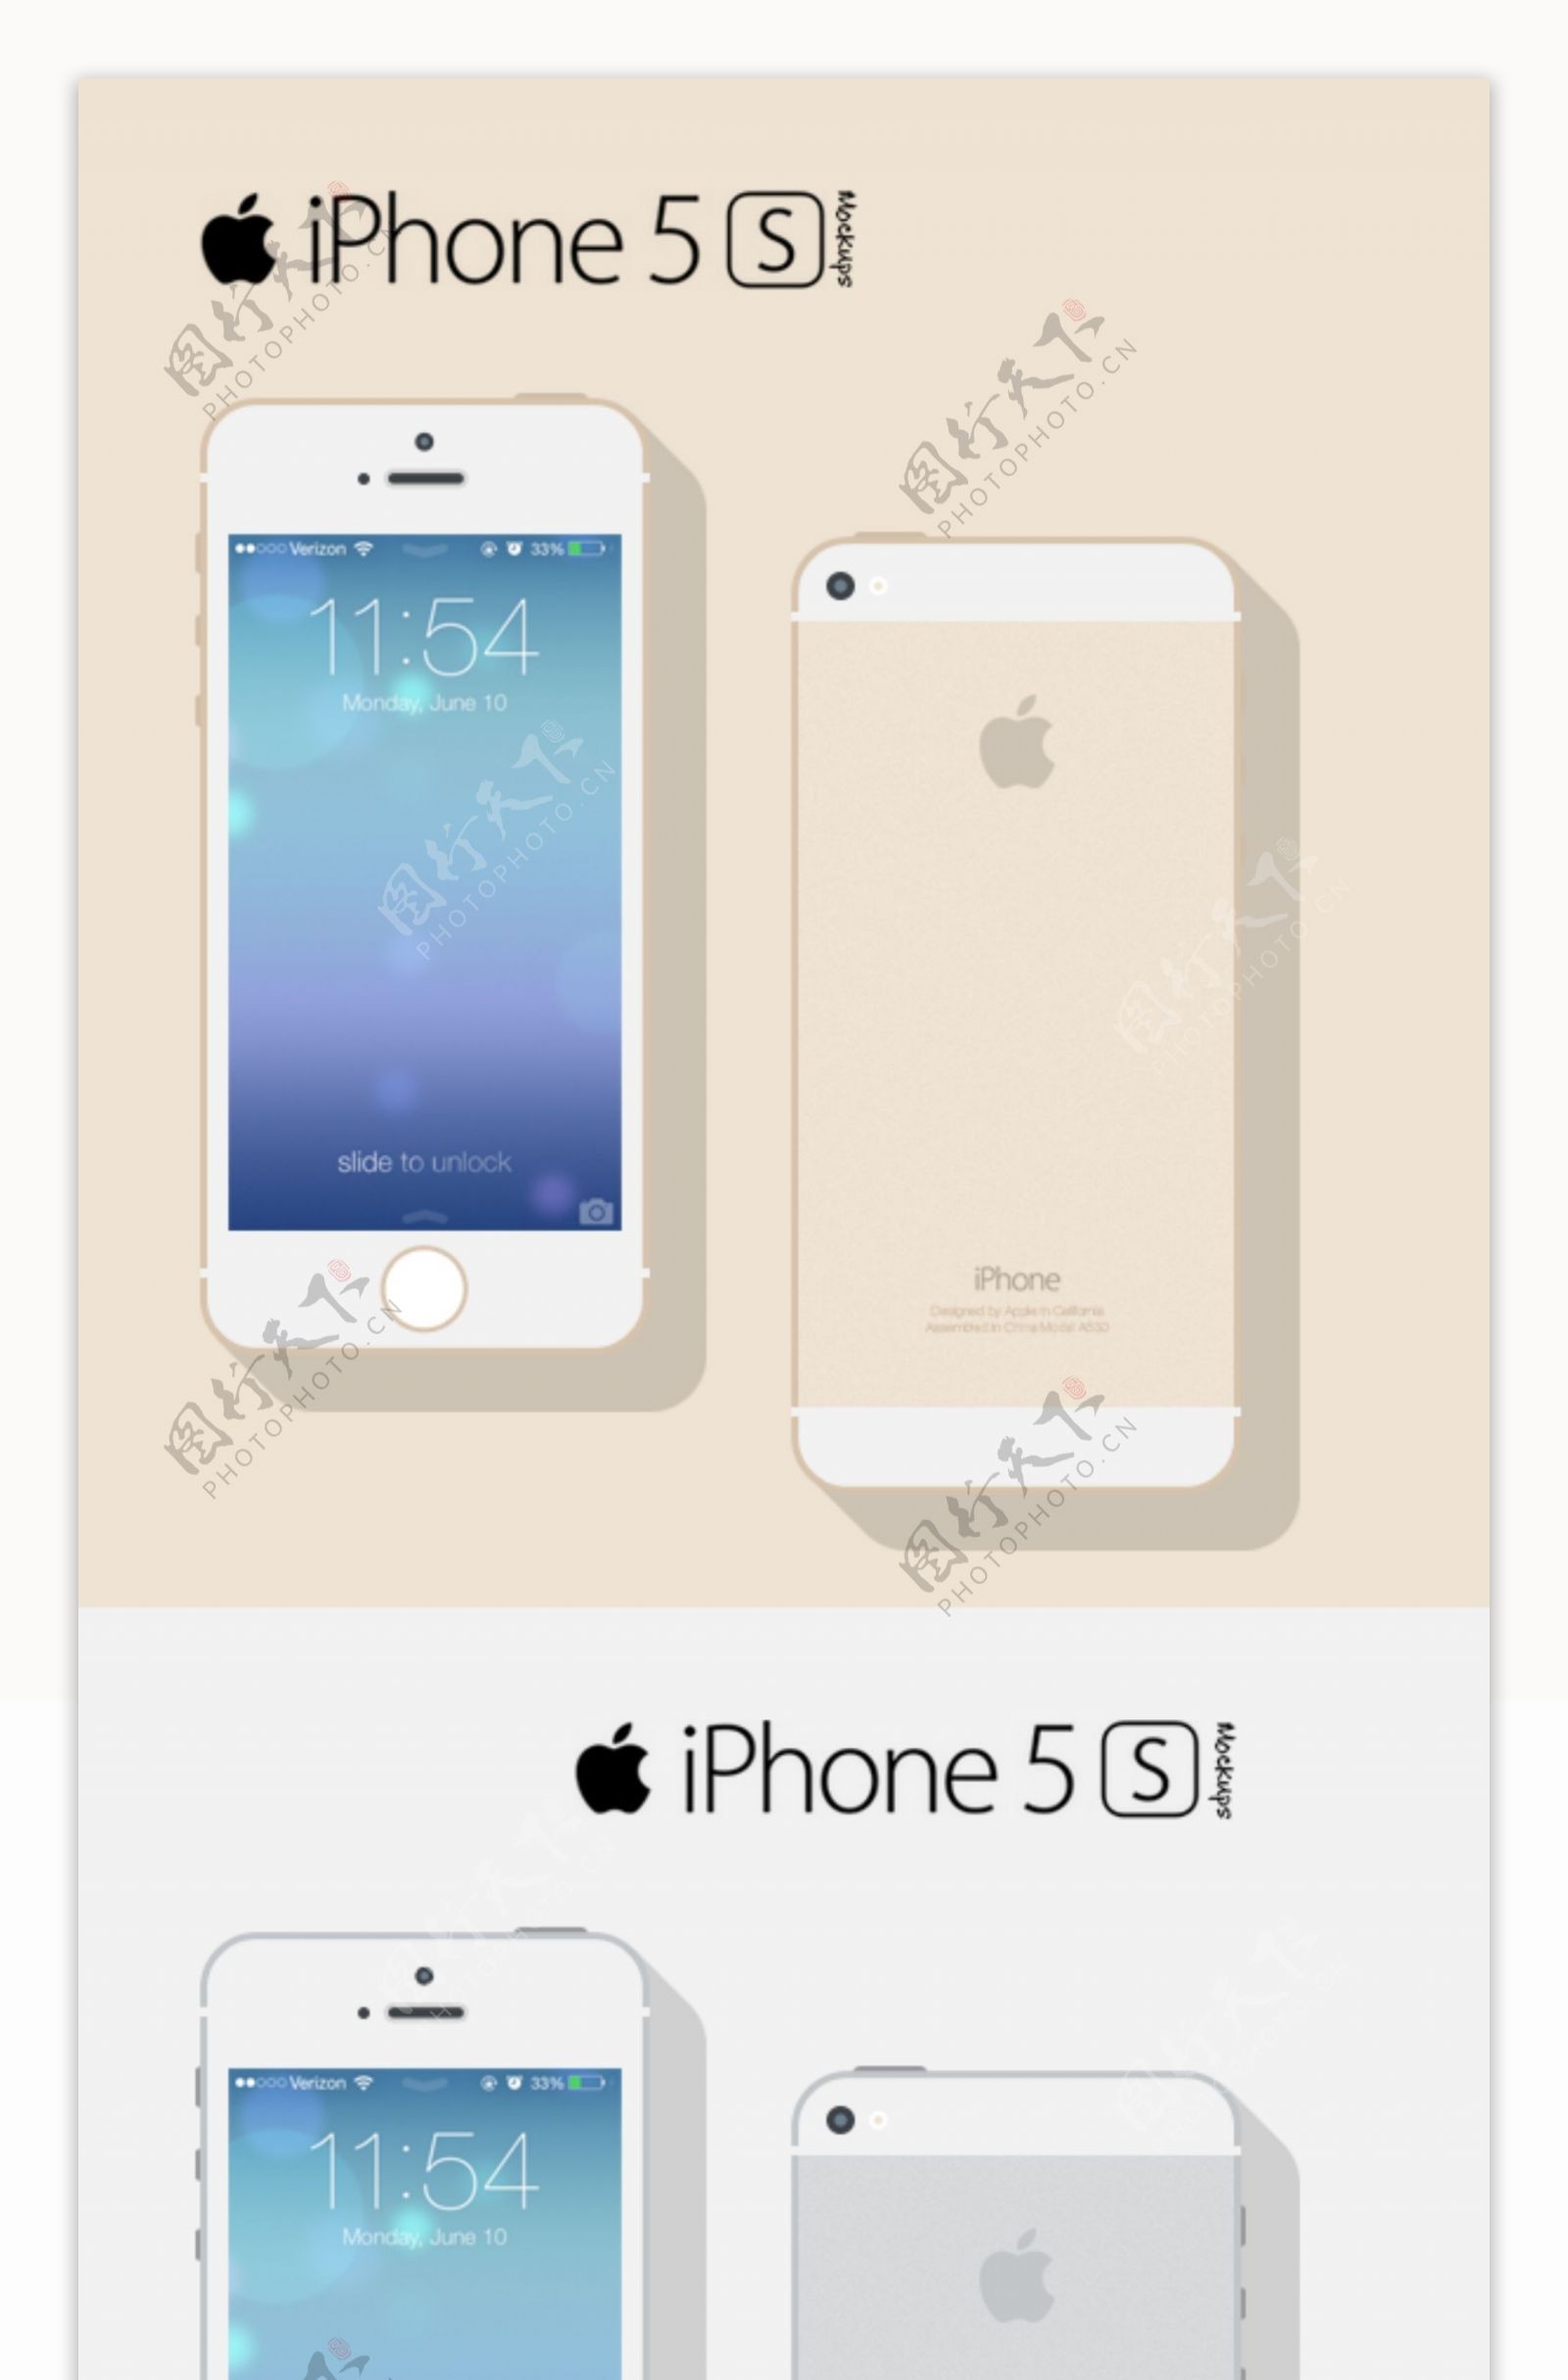 iPhone5s三色扁平界面设计素材